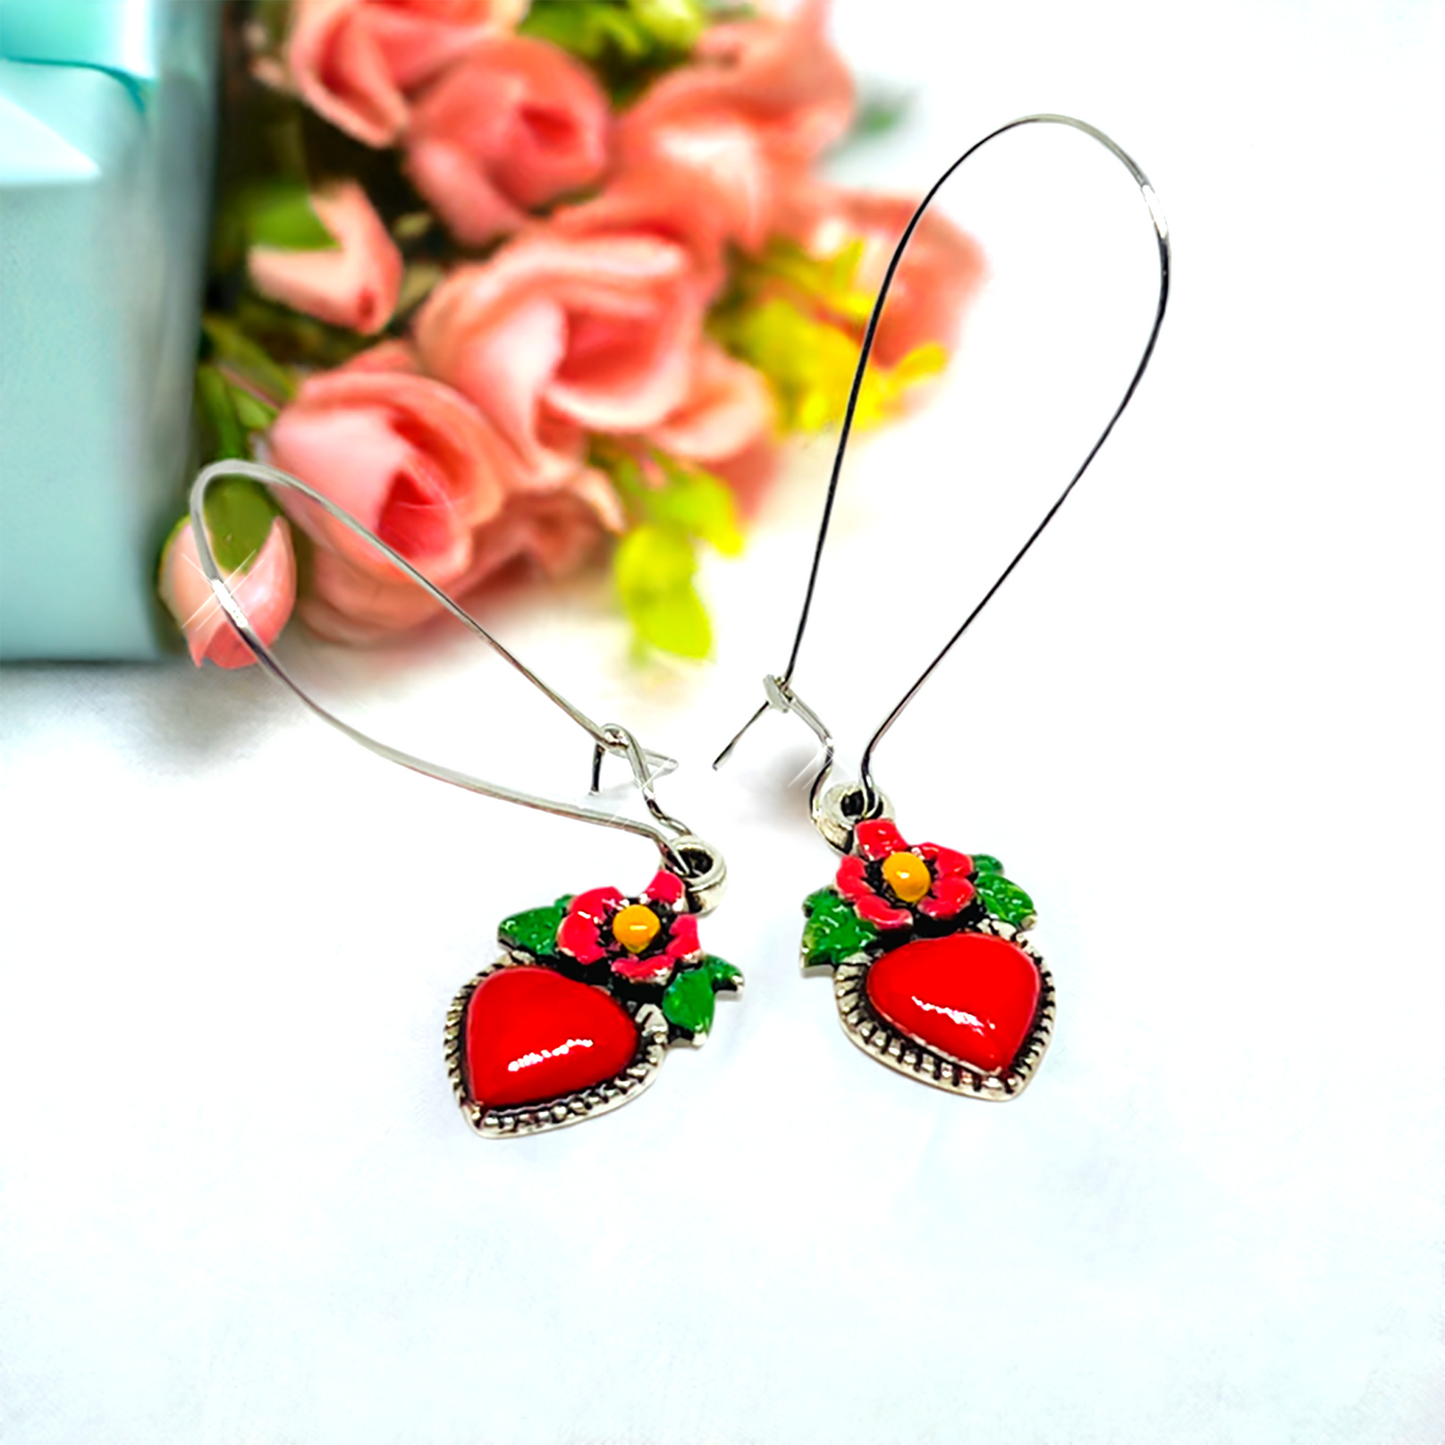 Red enamel heart earrings with long silver earwires. Mexican earrings. Mexican jewelry.